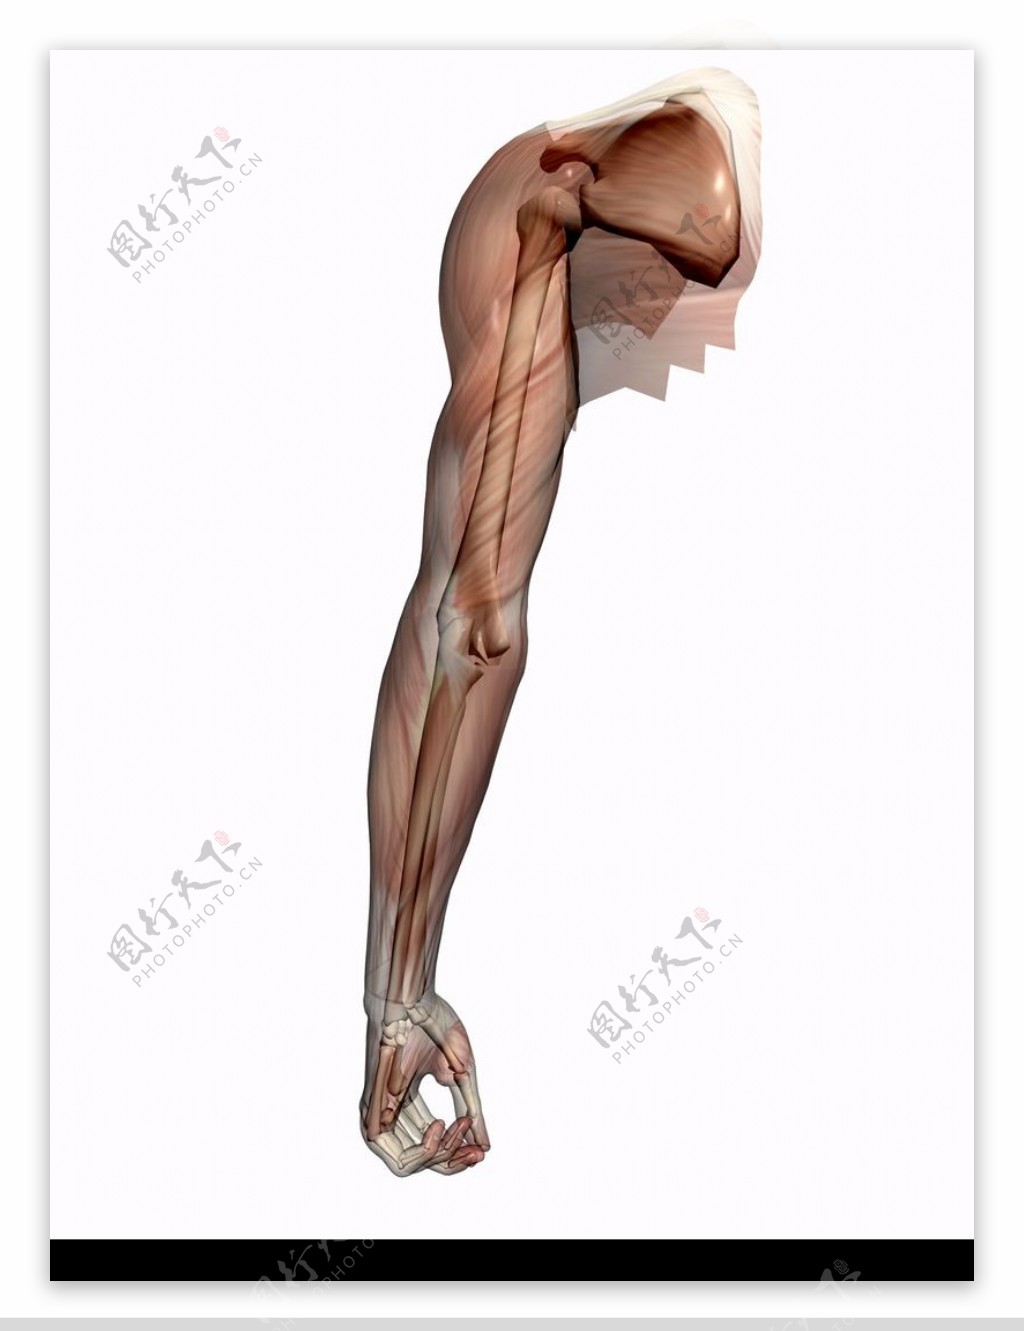 肌肉人体模型0075